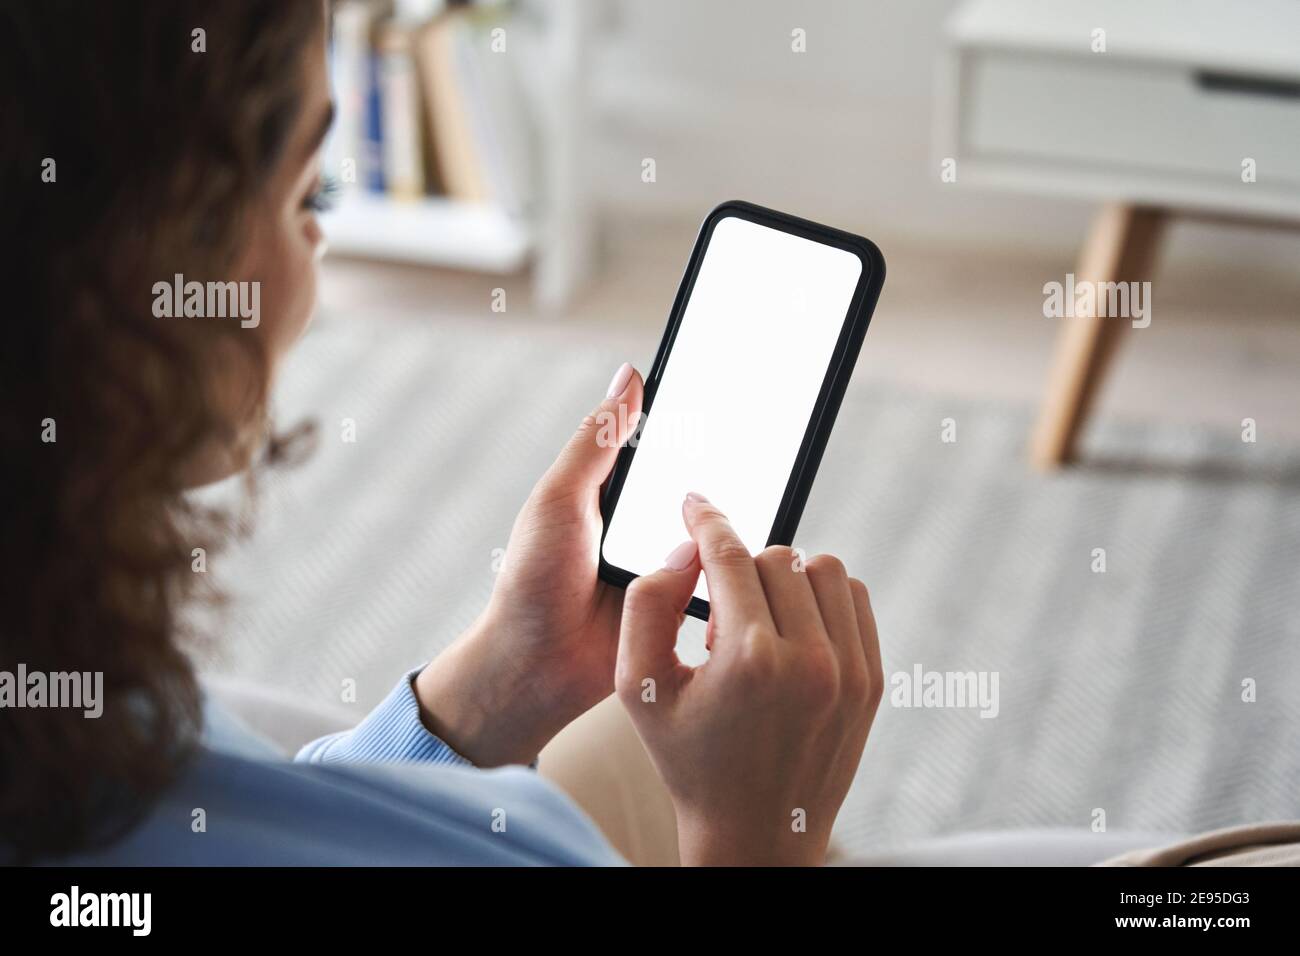 Mujer joven mano sosteniendo el teléfono inteligente tocando la pantalla en blanco. Foto de stock